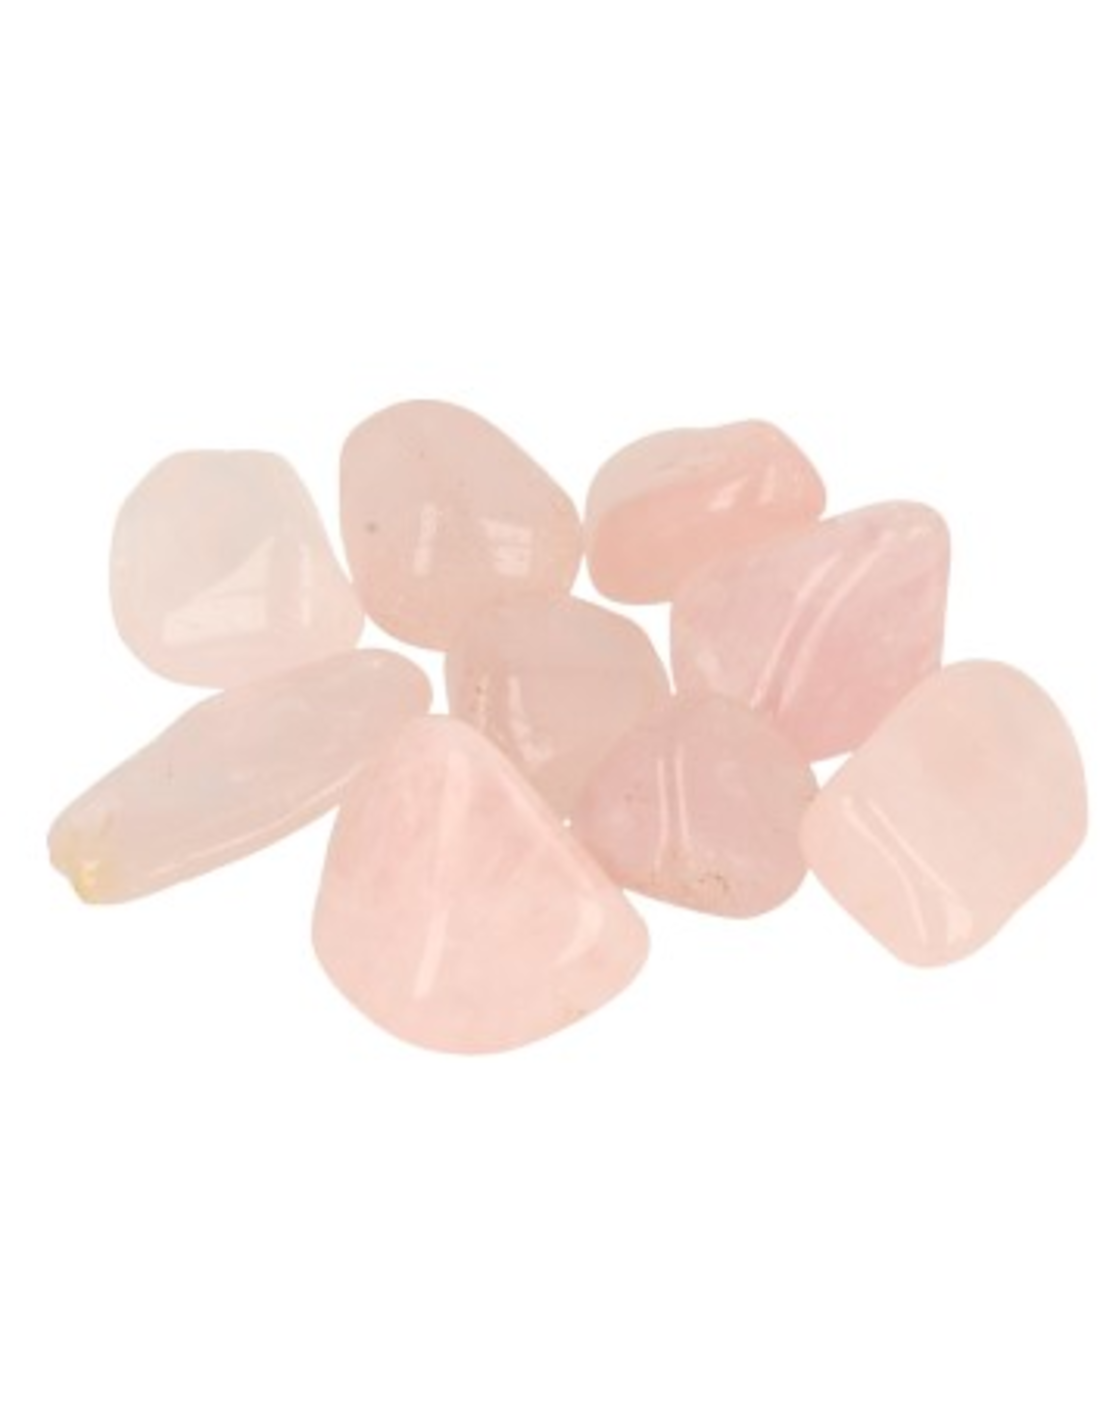 Gyrasol roze 100 gr. trommelstenen (mt3)